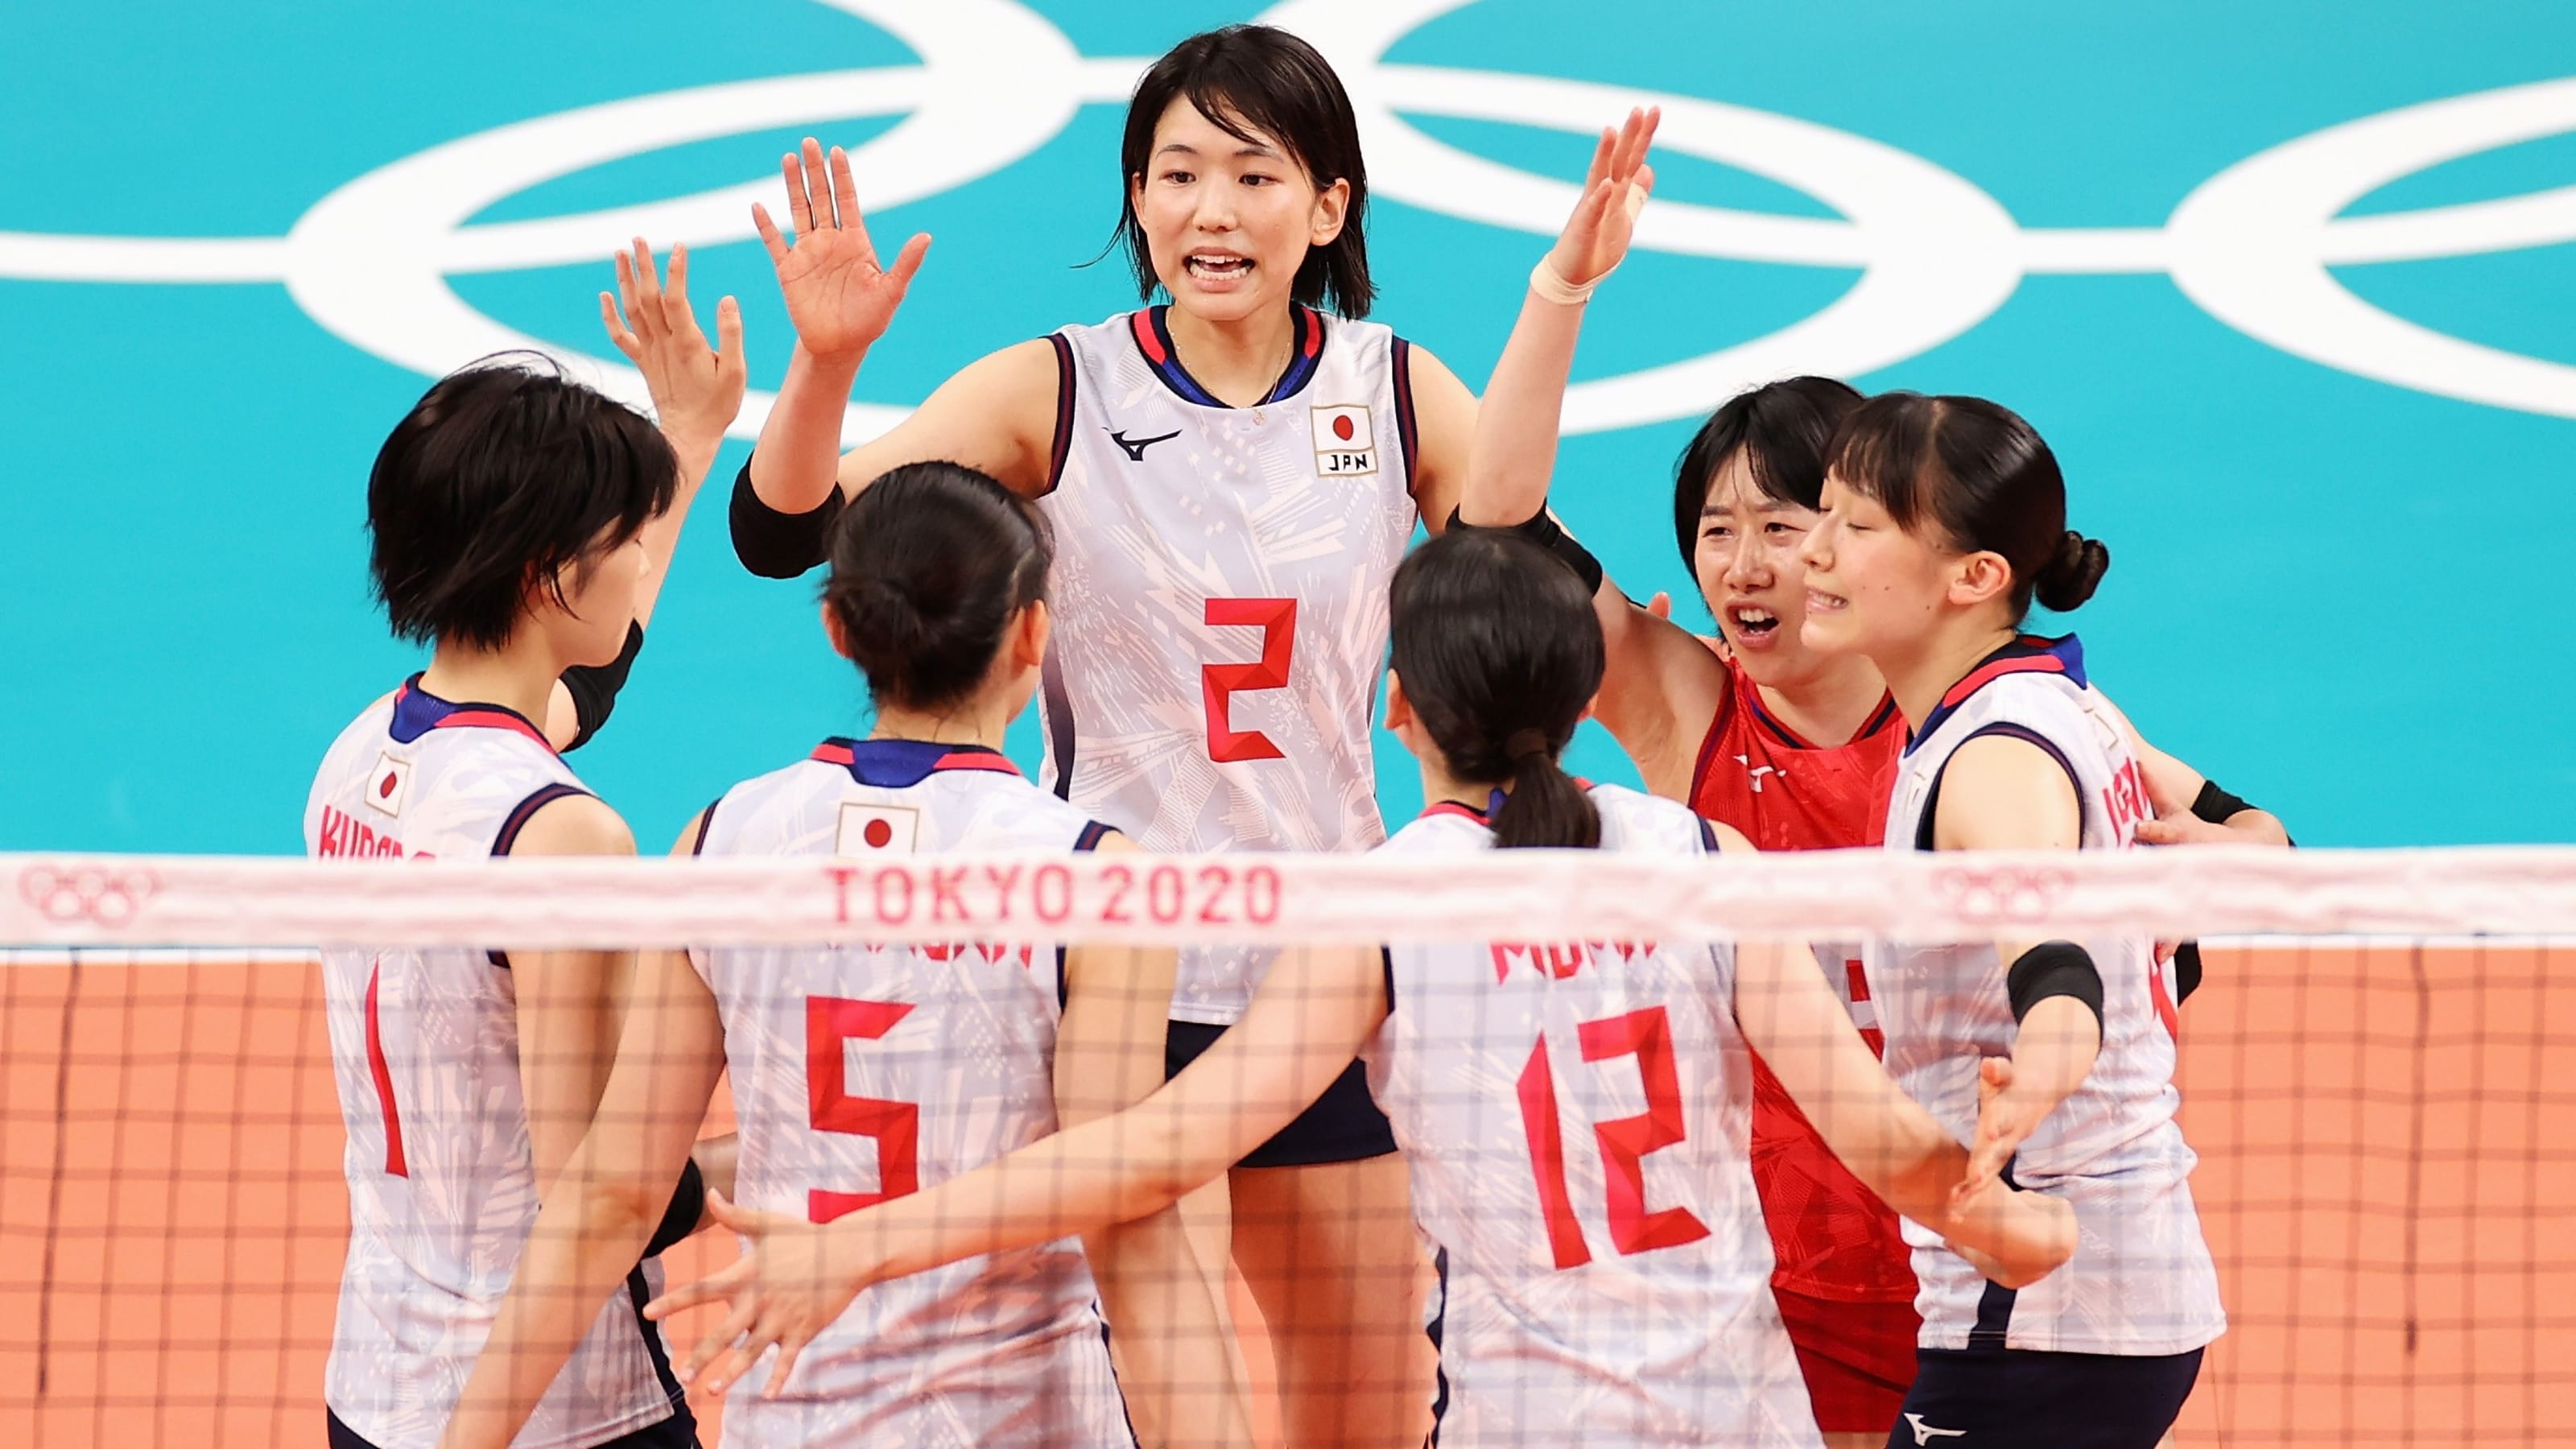 東京五輪 女子バレーボール 日本はまさかの予選ラウンド敗退 アメリカが初の金メダル